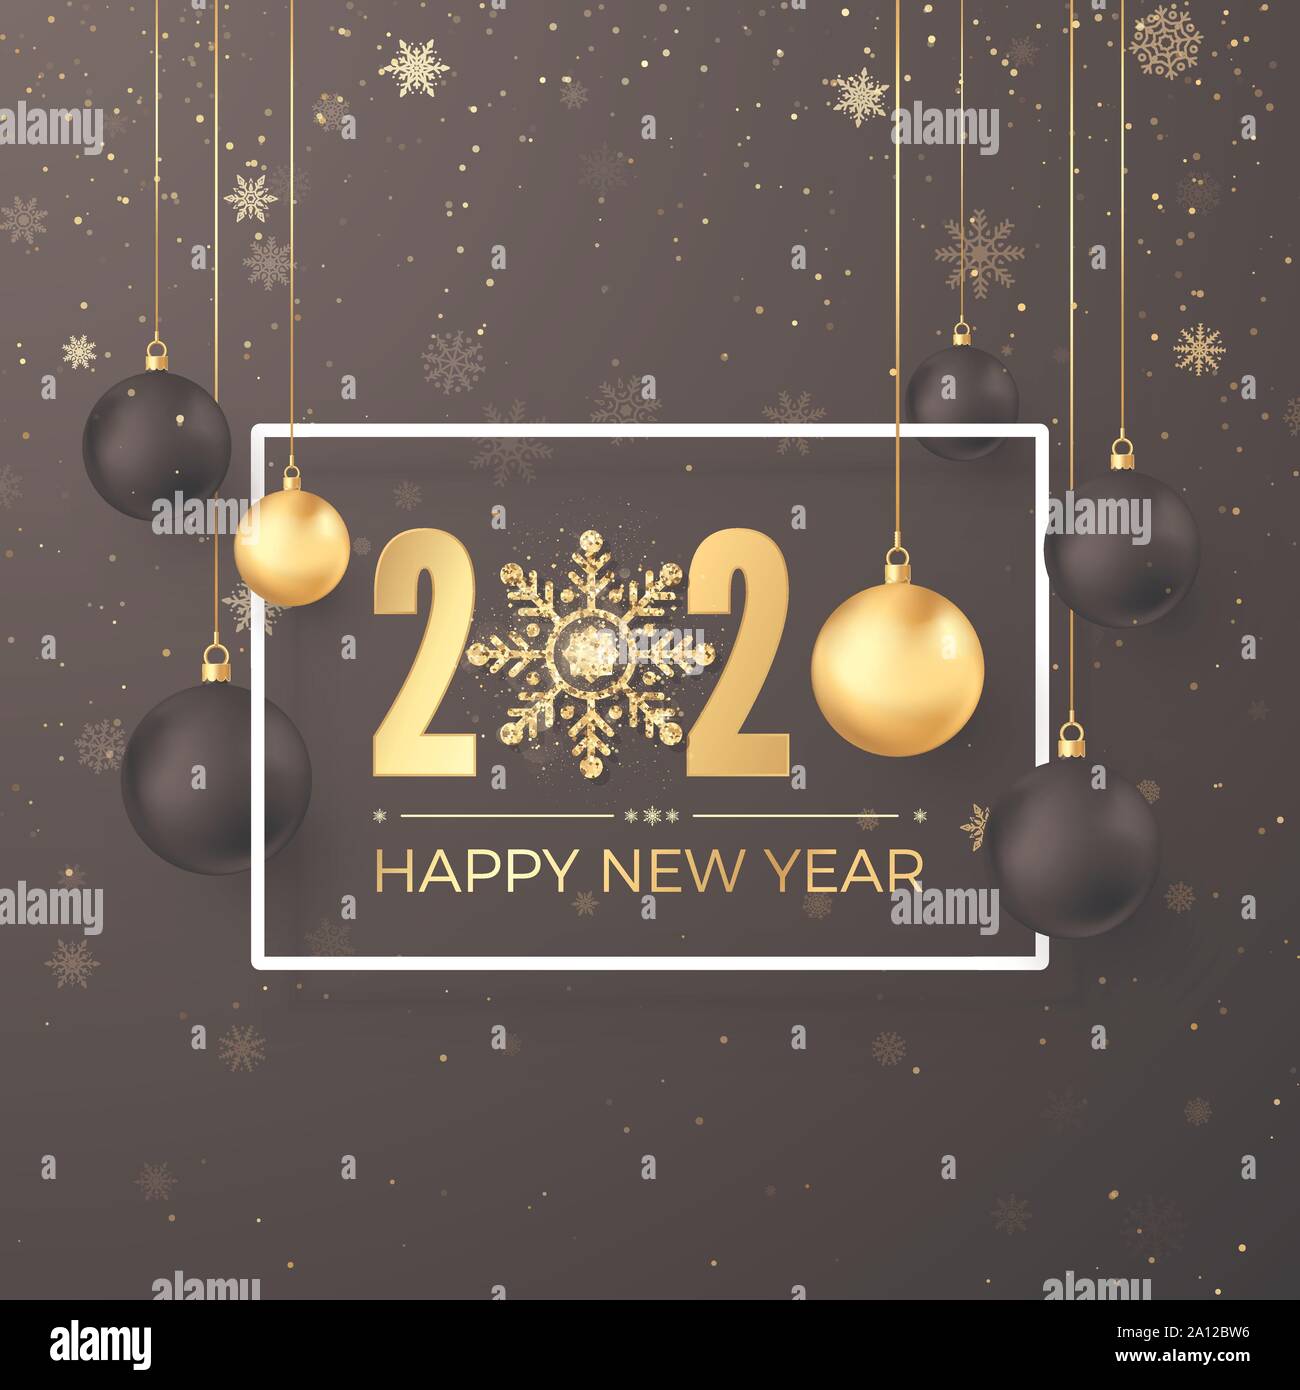 Weihnachten Dekoration Elemente. Gruß goldenen Zahlen 2020 und Text Frohes Neues Jahr auf dunklem Hintergrund in weißen Rahmen. Schwarze und goldene hängenden Christus Stock Vektor